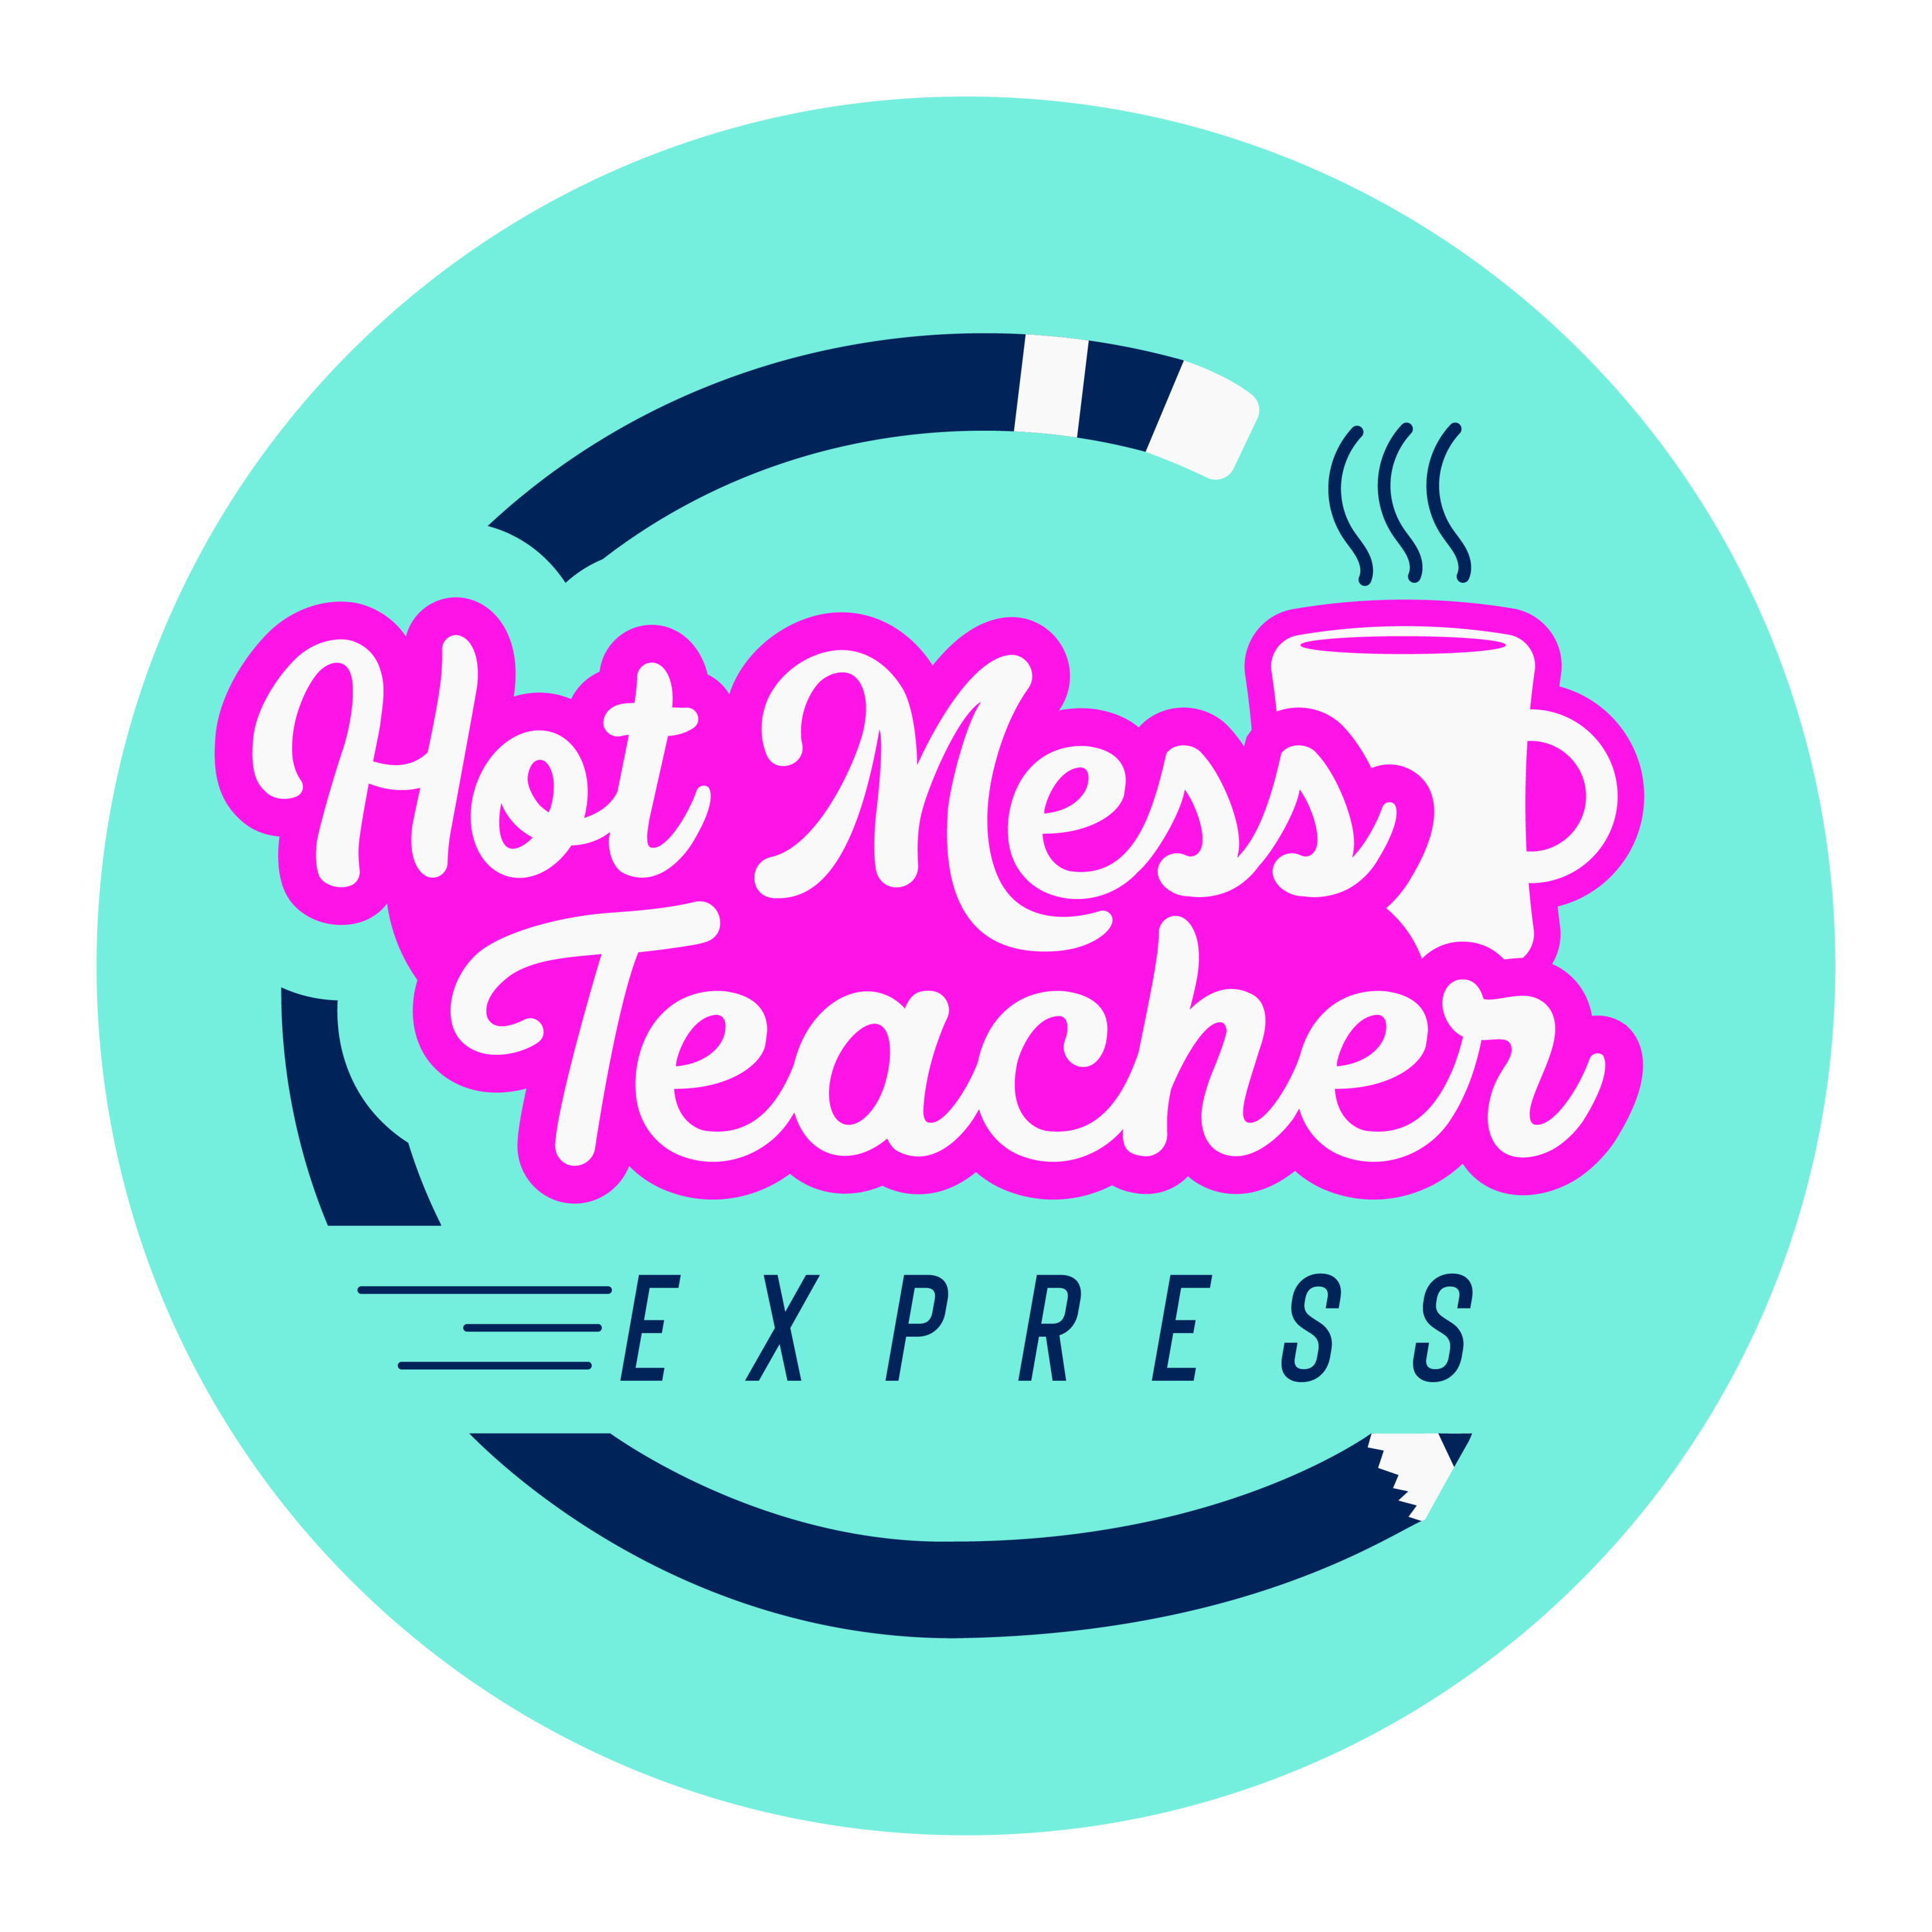 Hot Mess Teacher Express